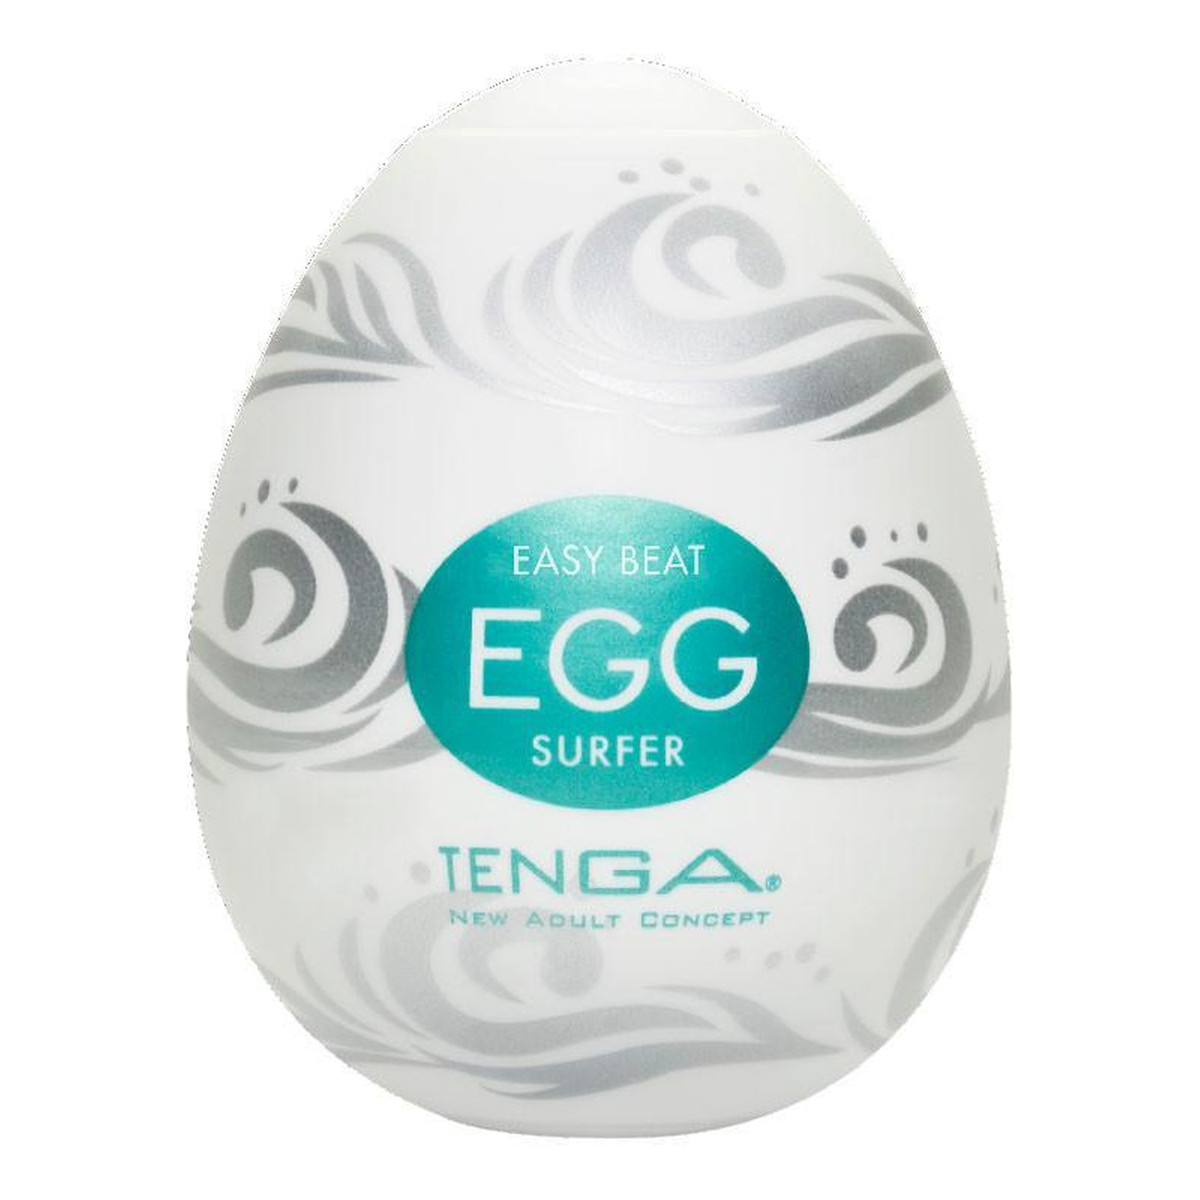 Tenga Easy beat egg surfer jednorazowy masturbator w kształcie jajka